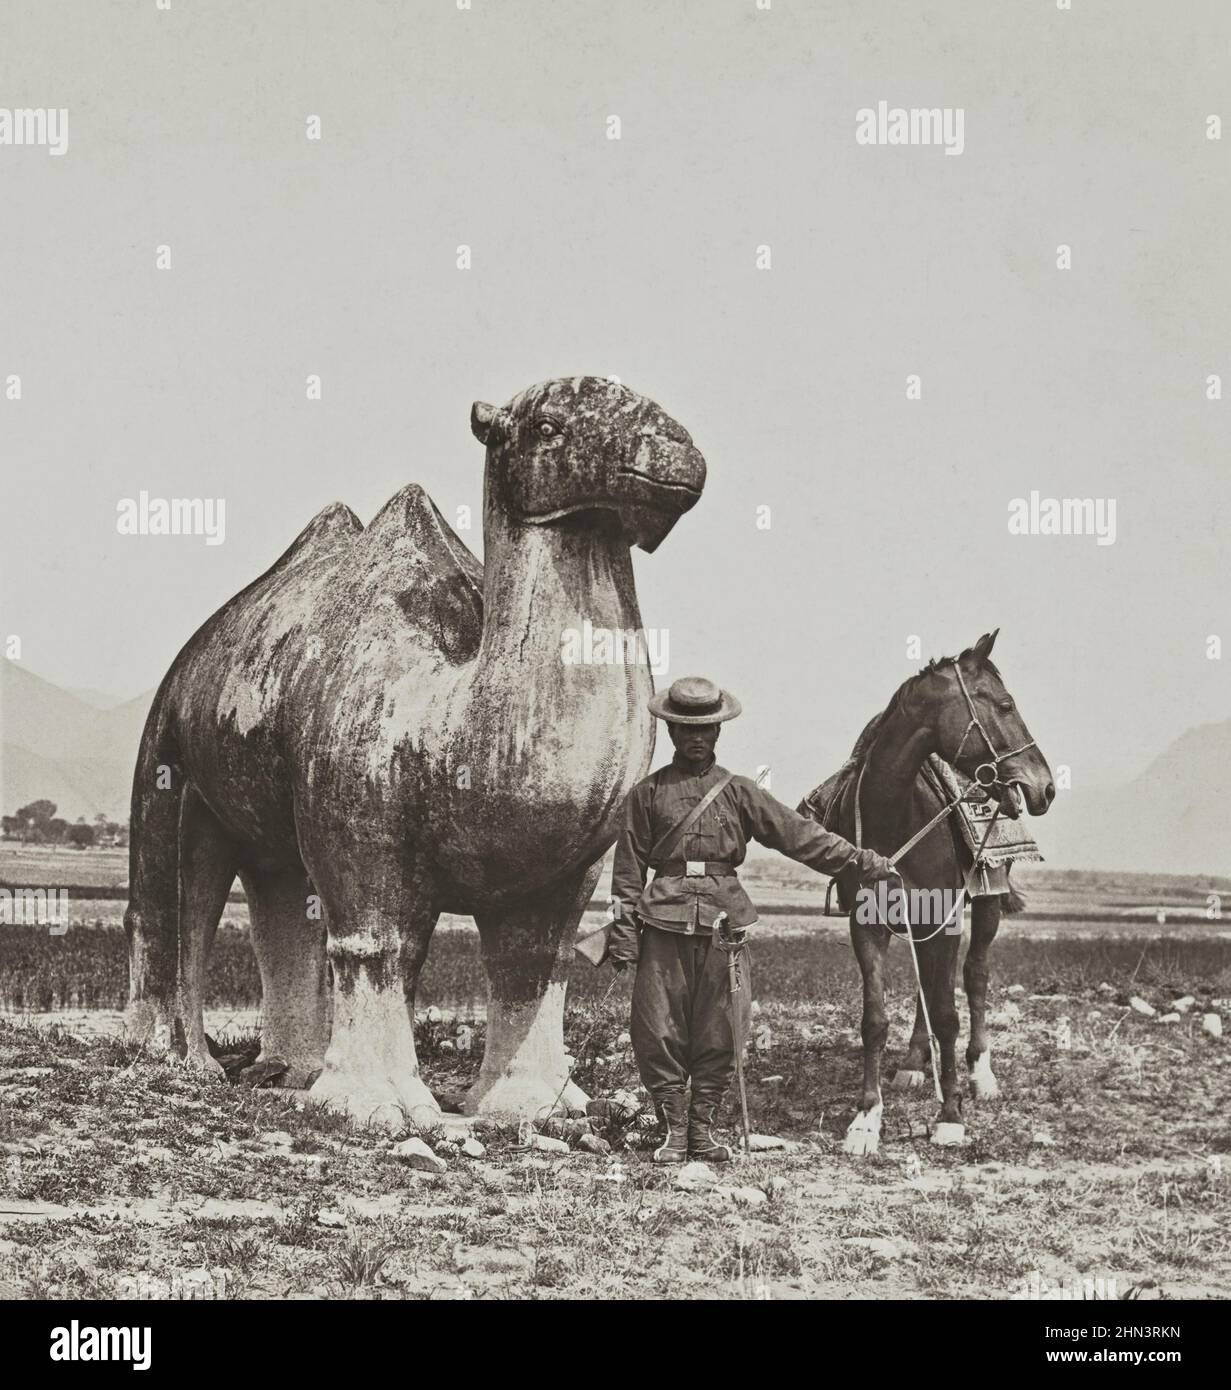 Vintagep Foto von Qing chinesischen Soldaten in der Nähe von alten riesigen Skulptur aus Stein Kamel. Ming-Gräber. Nordchina. November 1902 Stockfoto